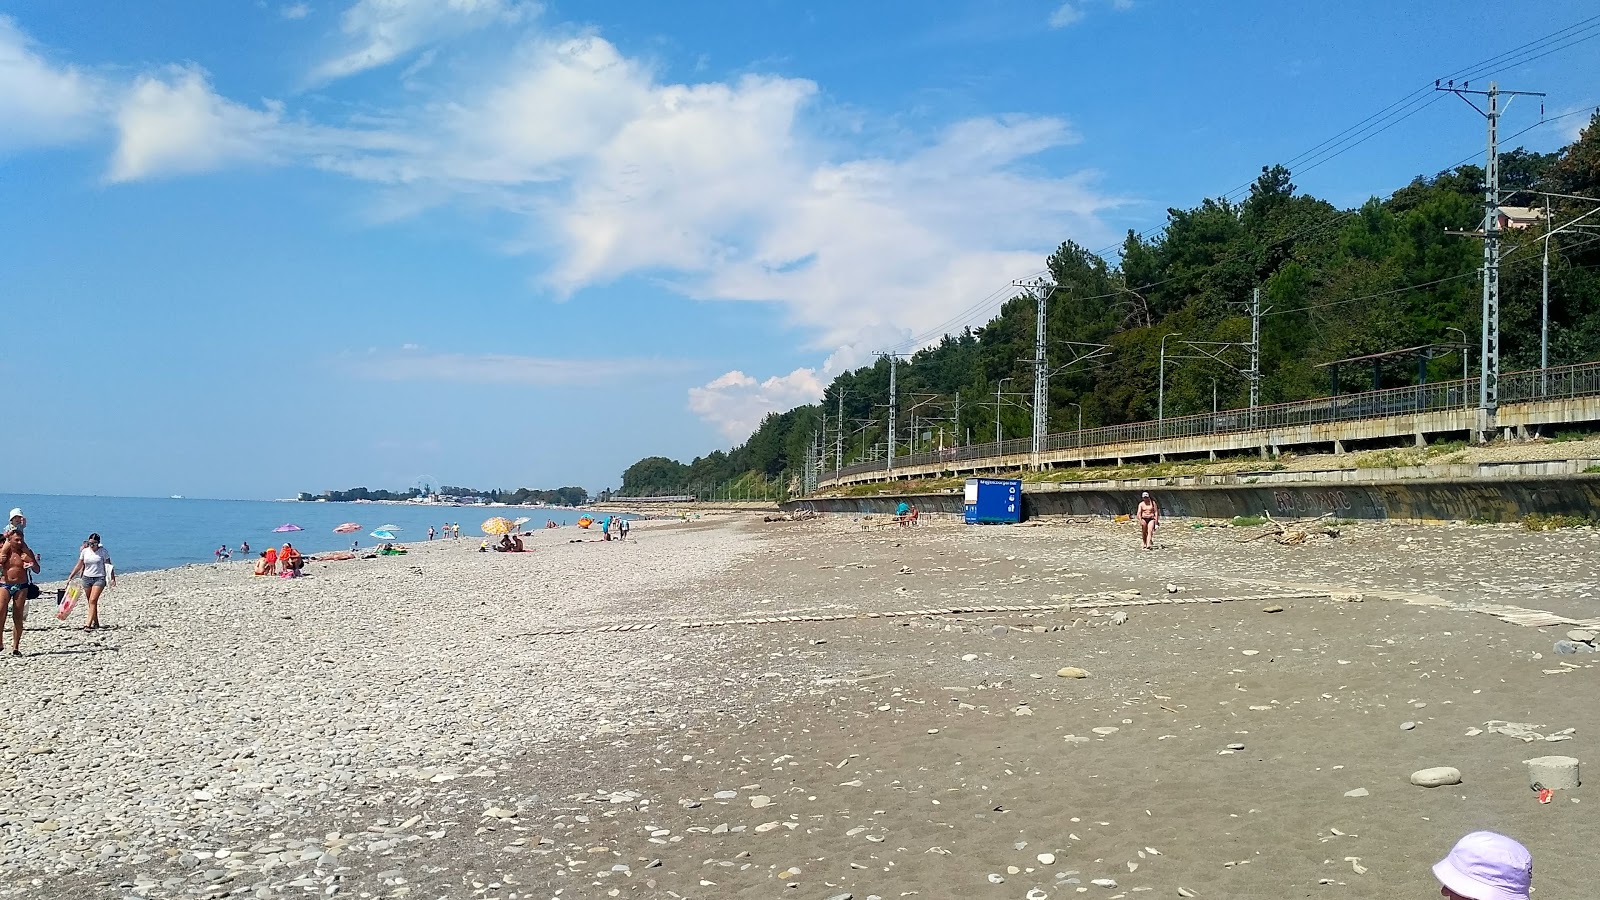 Thessaloniki beach'in fotoğrafı gri çakıl taşı yüzey ile